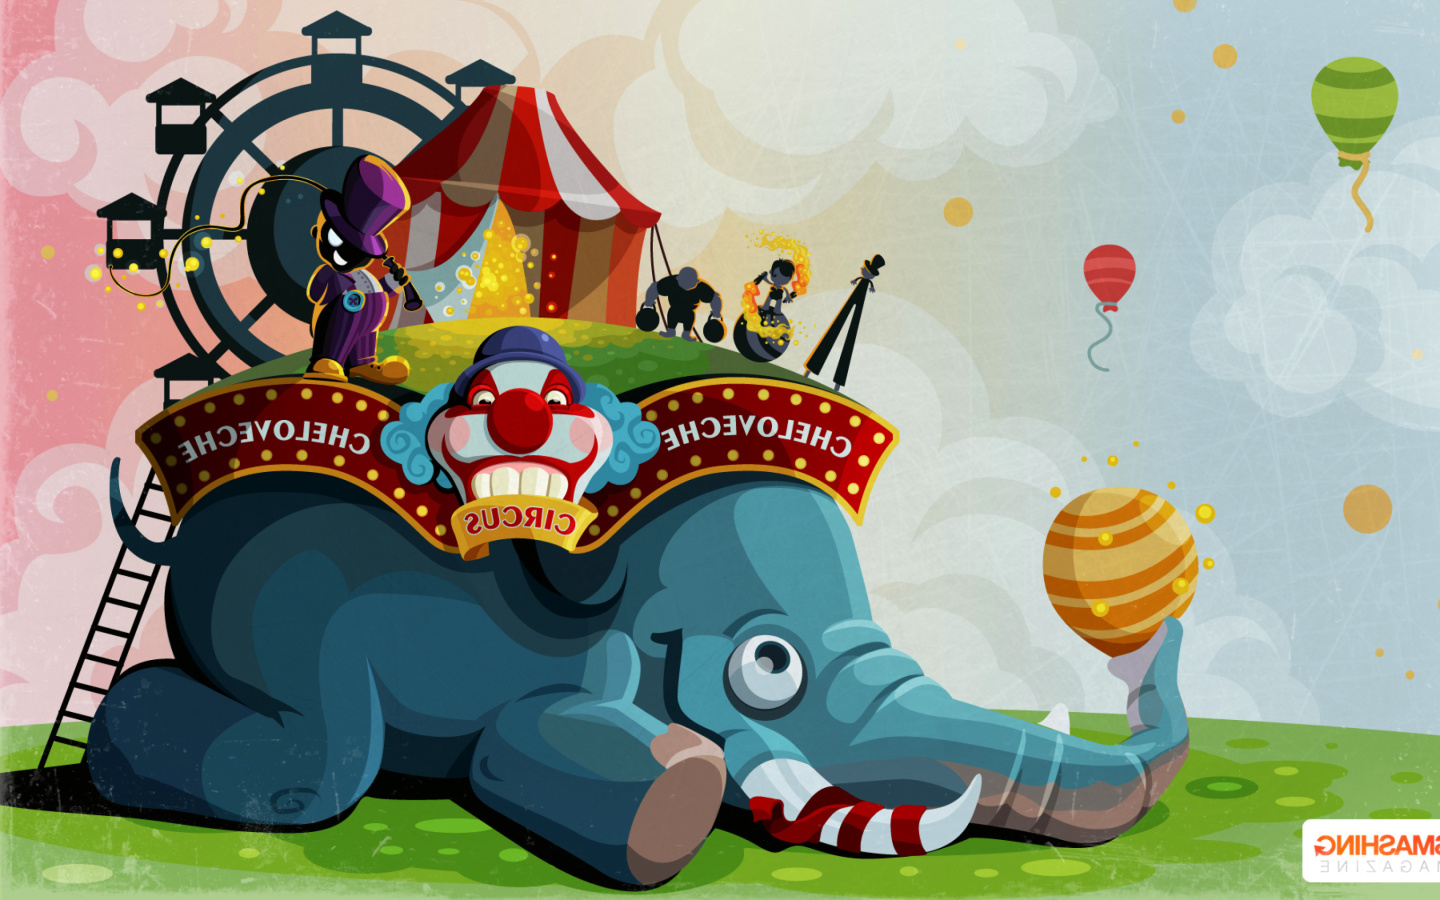 Обои Circus with Elephant 1440x900